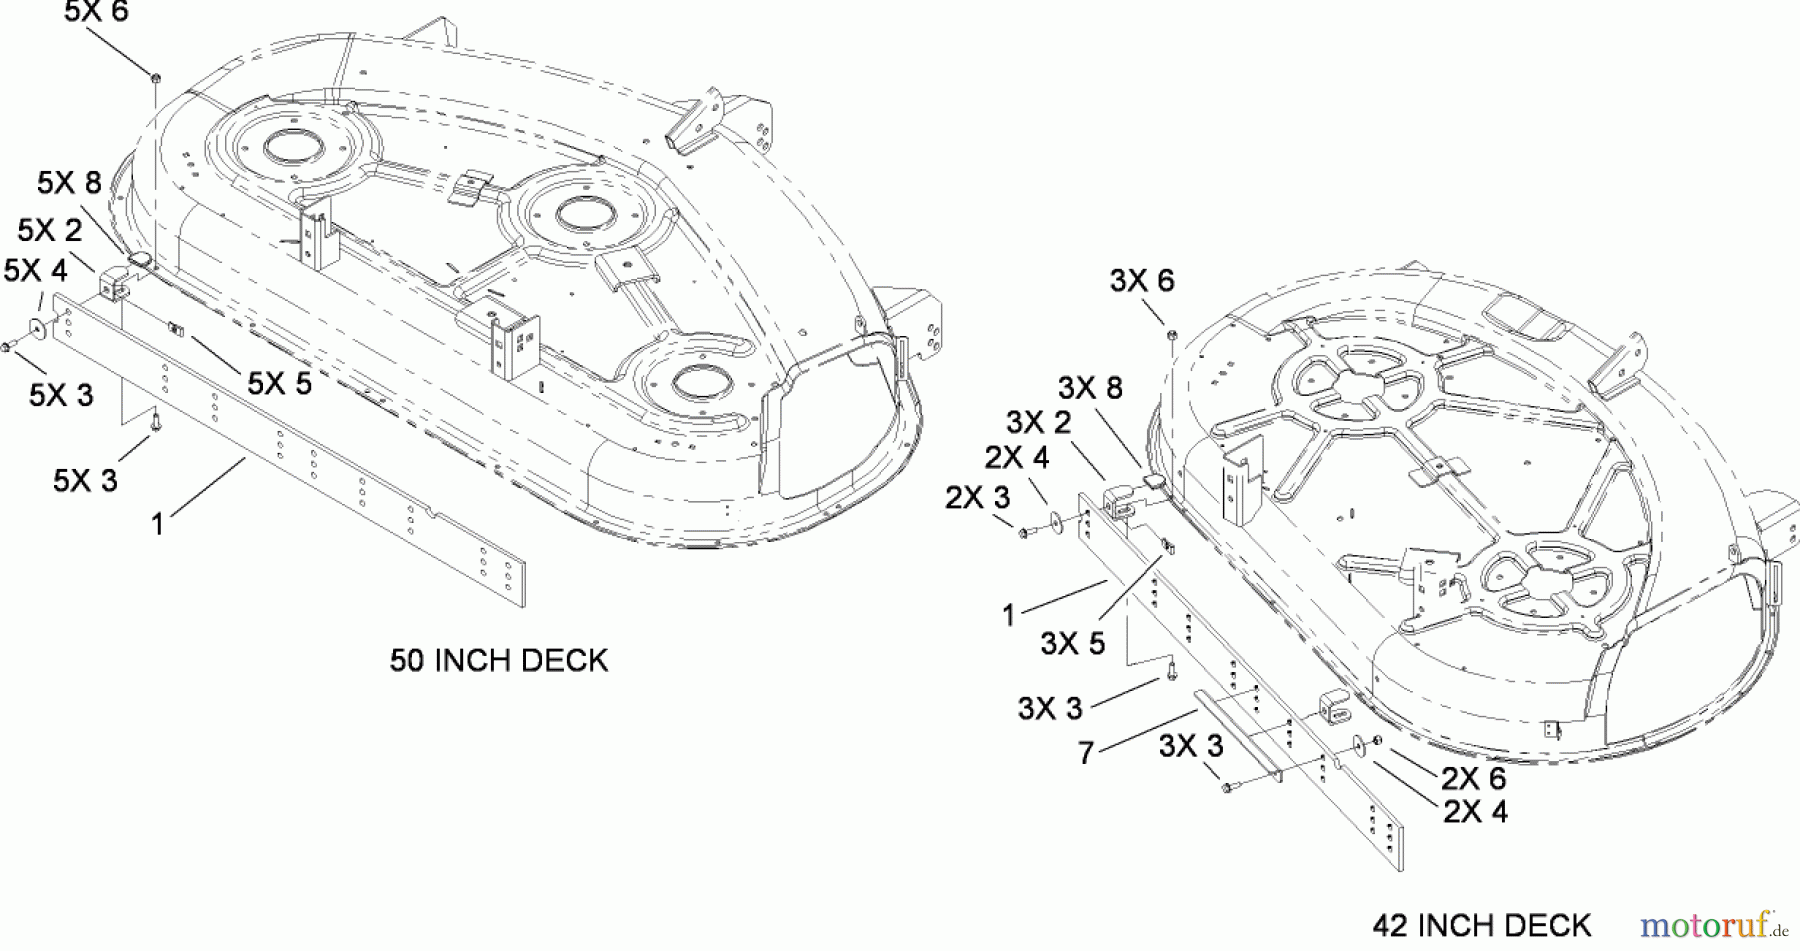  Toro Neu Accessories, Mower 114-8545 - Toro Striping Kit, 42